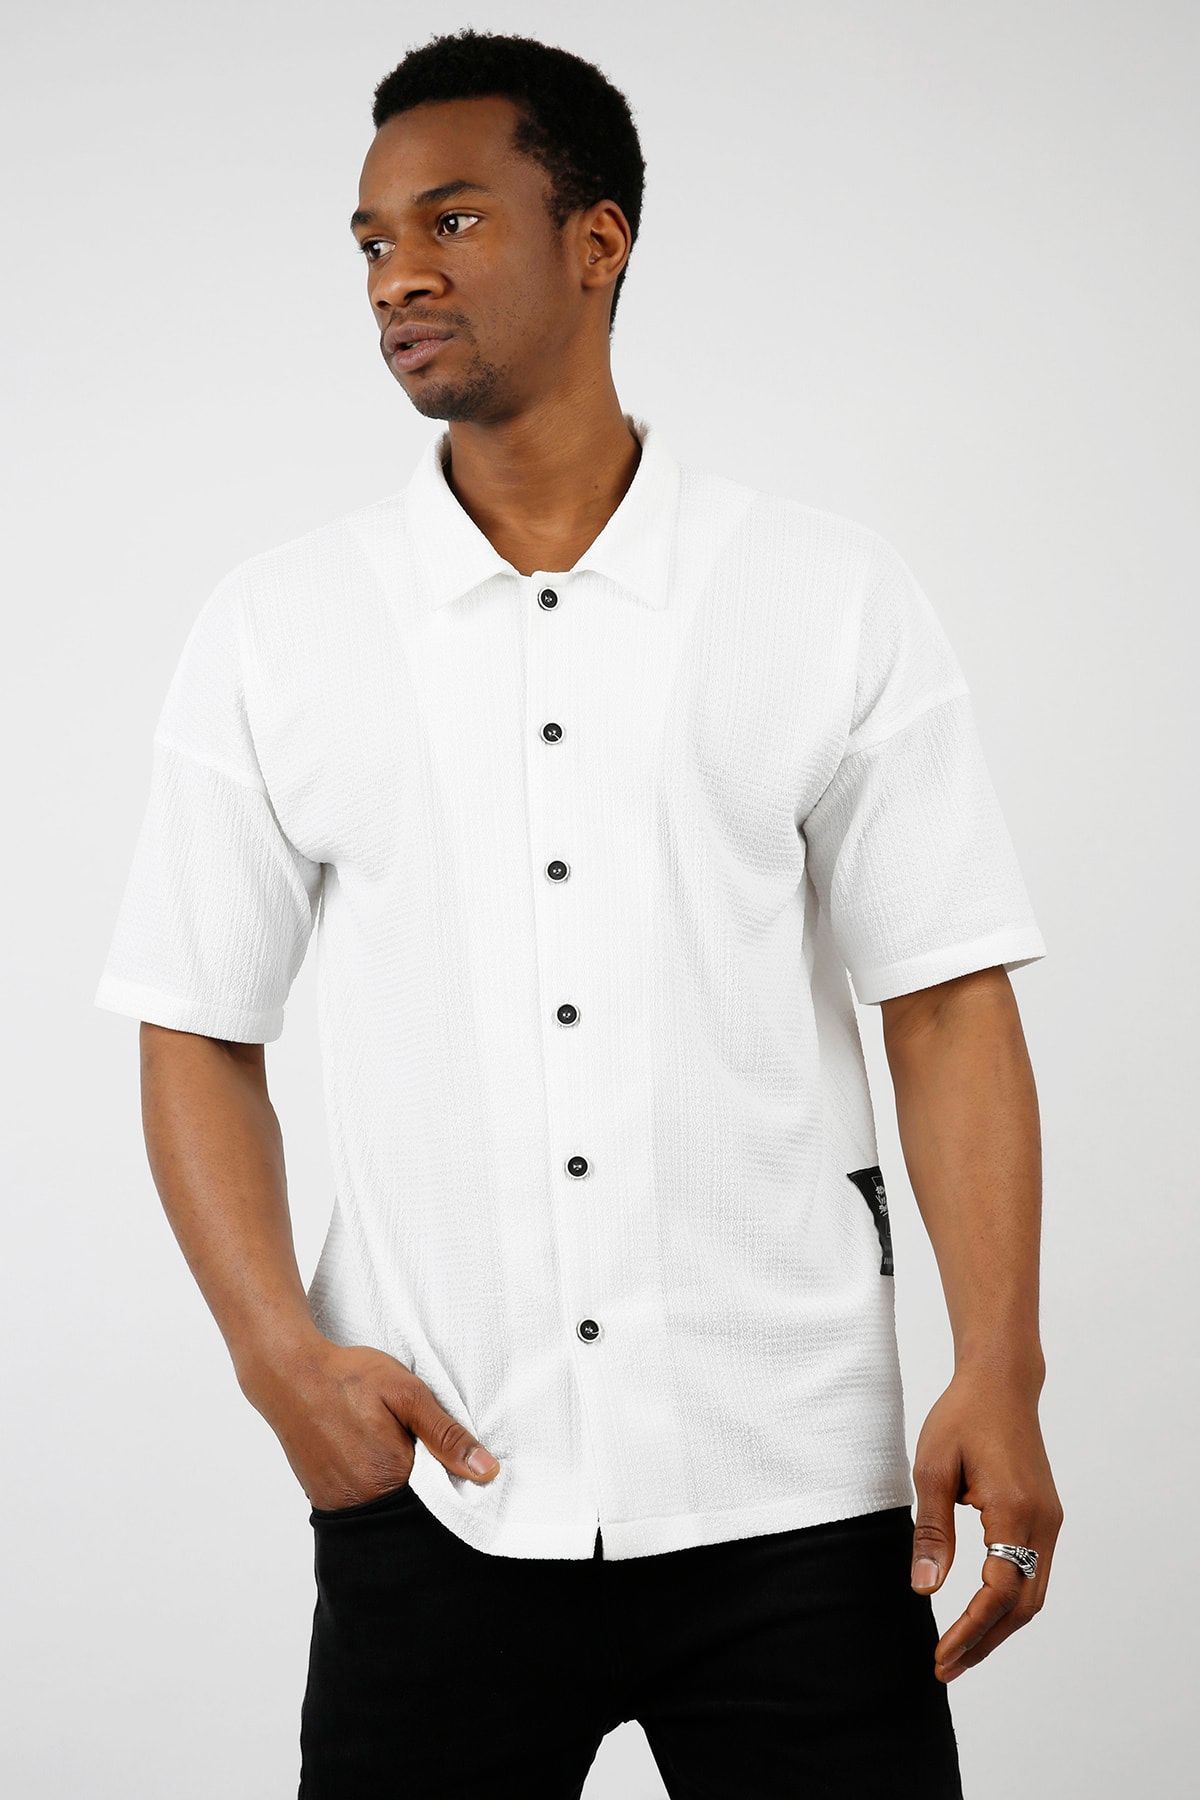 XHAN Erkek Beyaz Salaş Kısa Kollu Gömlek 1kxe2-44733-01